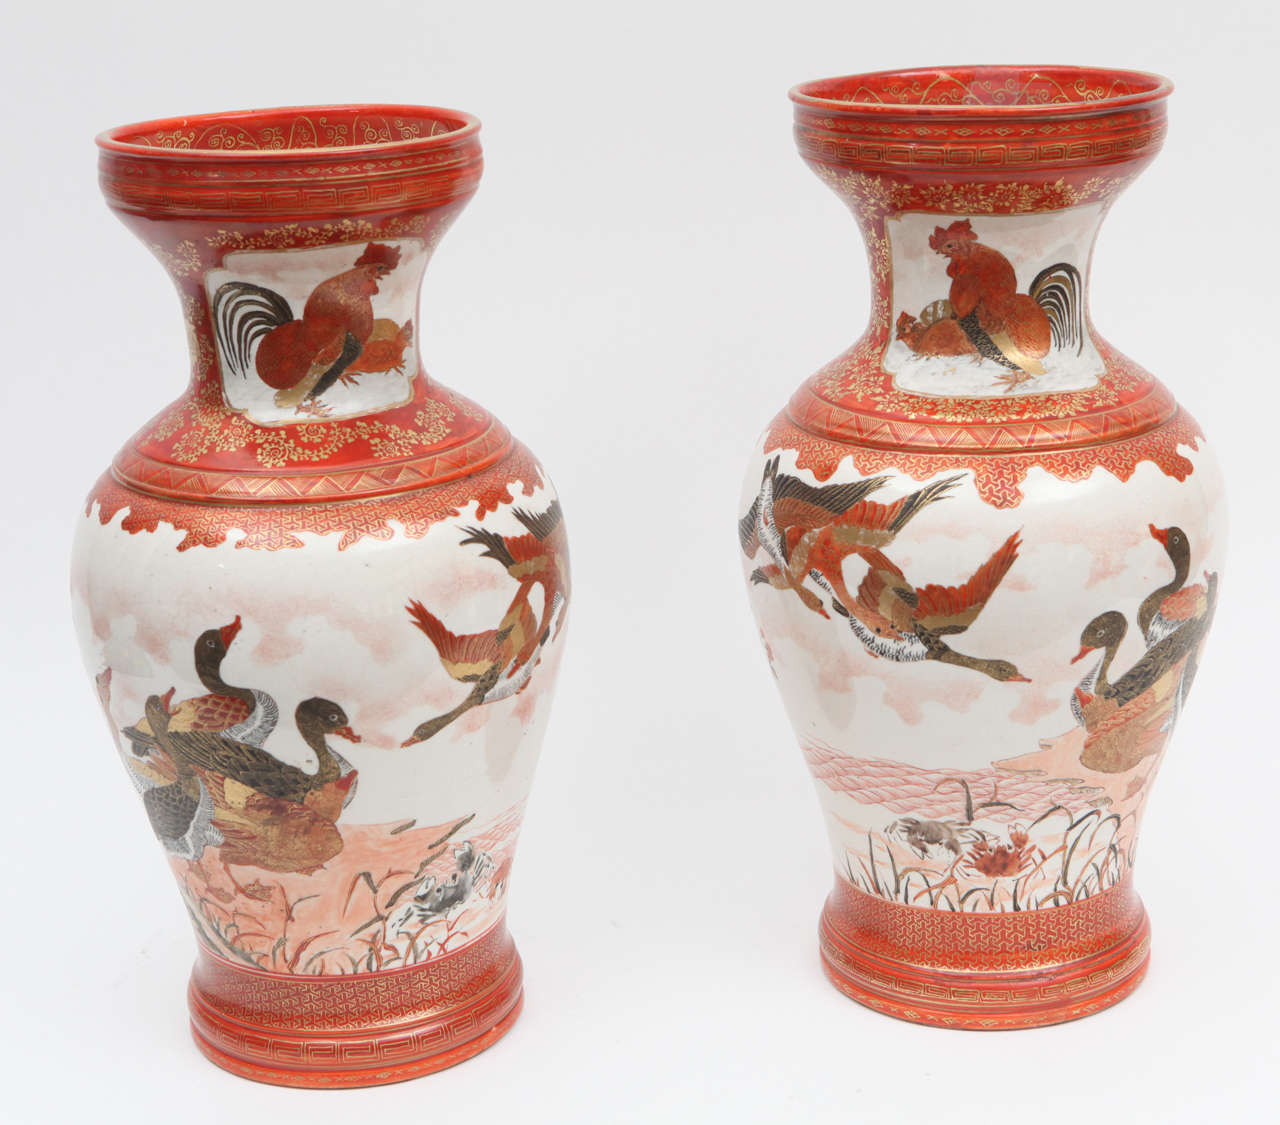 Zwei japanische Kutanivasen aus dem späten 19. Jahrhundert, handbemalt und vergoldet, aus Porzellan. Diese Vasen sind signiert.